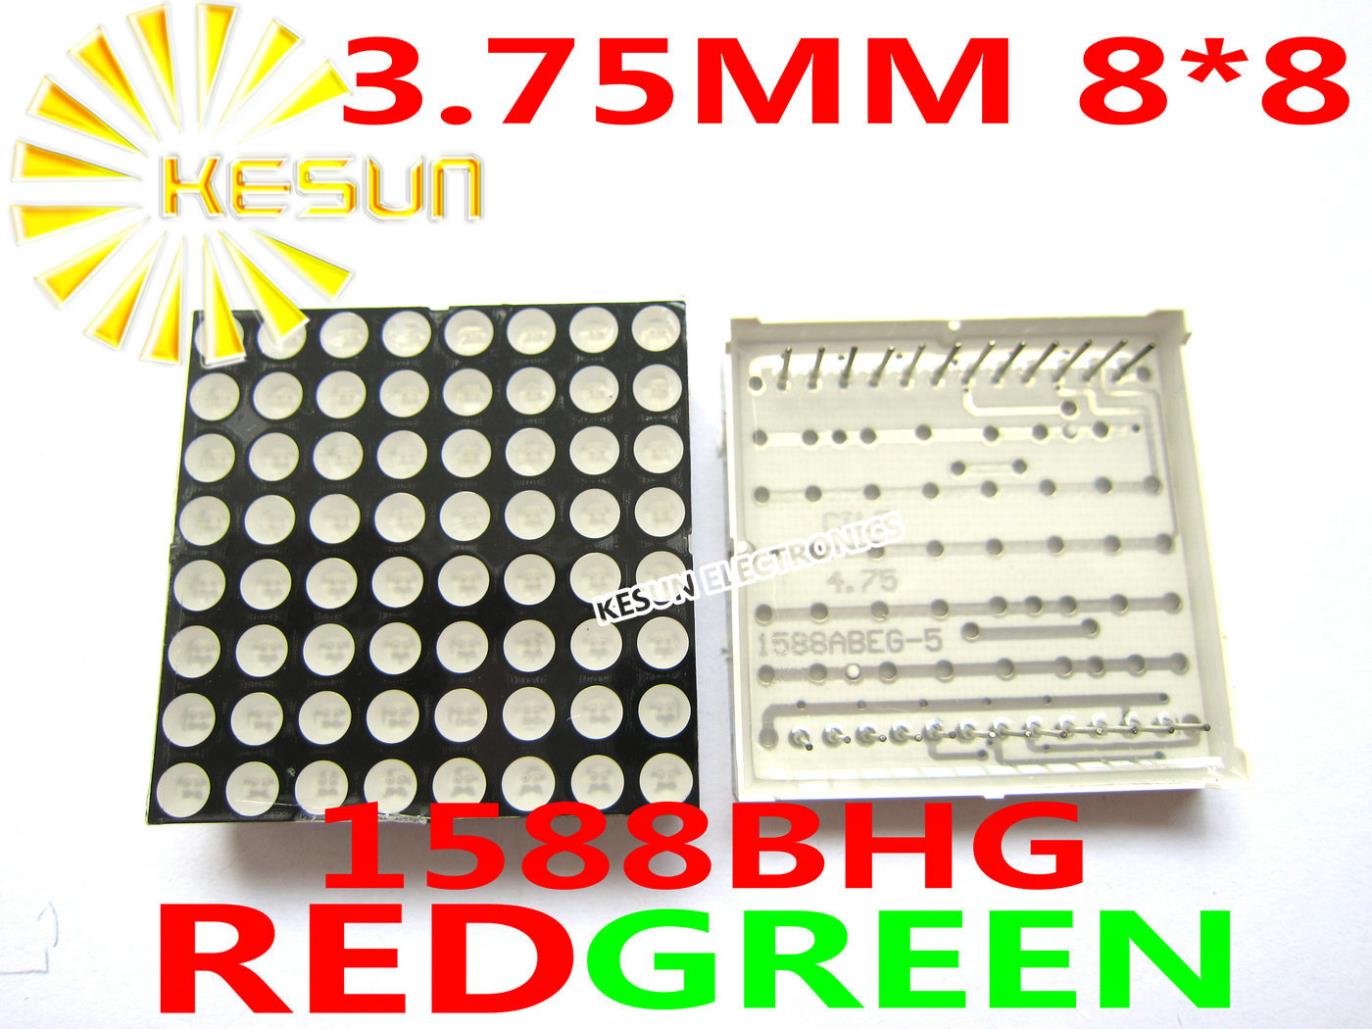 10 STKS x 3.75 MM 8X8 Rood Groen tweekleurige Gemeenschappelijke Anode 38*38 LED Dot Matrix Digitale Buis Module 1588BHG Display Module